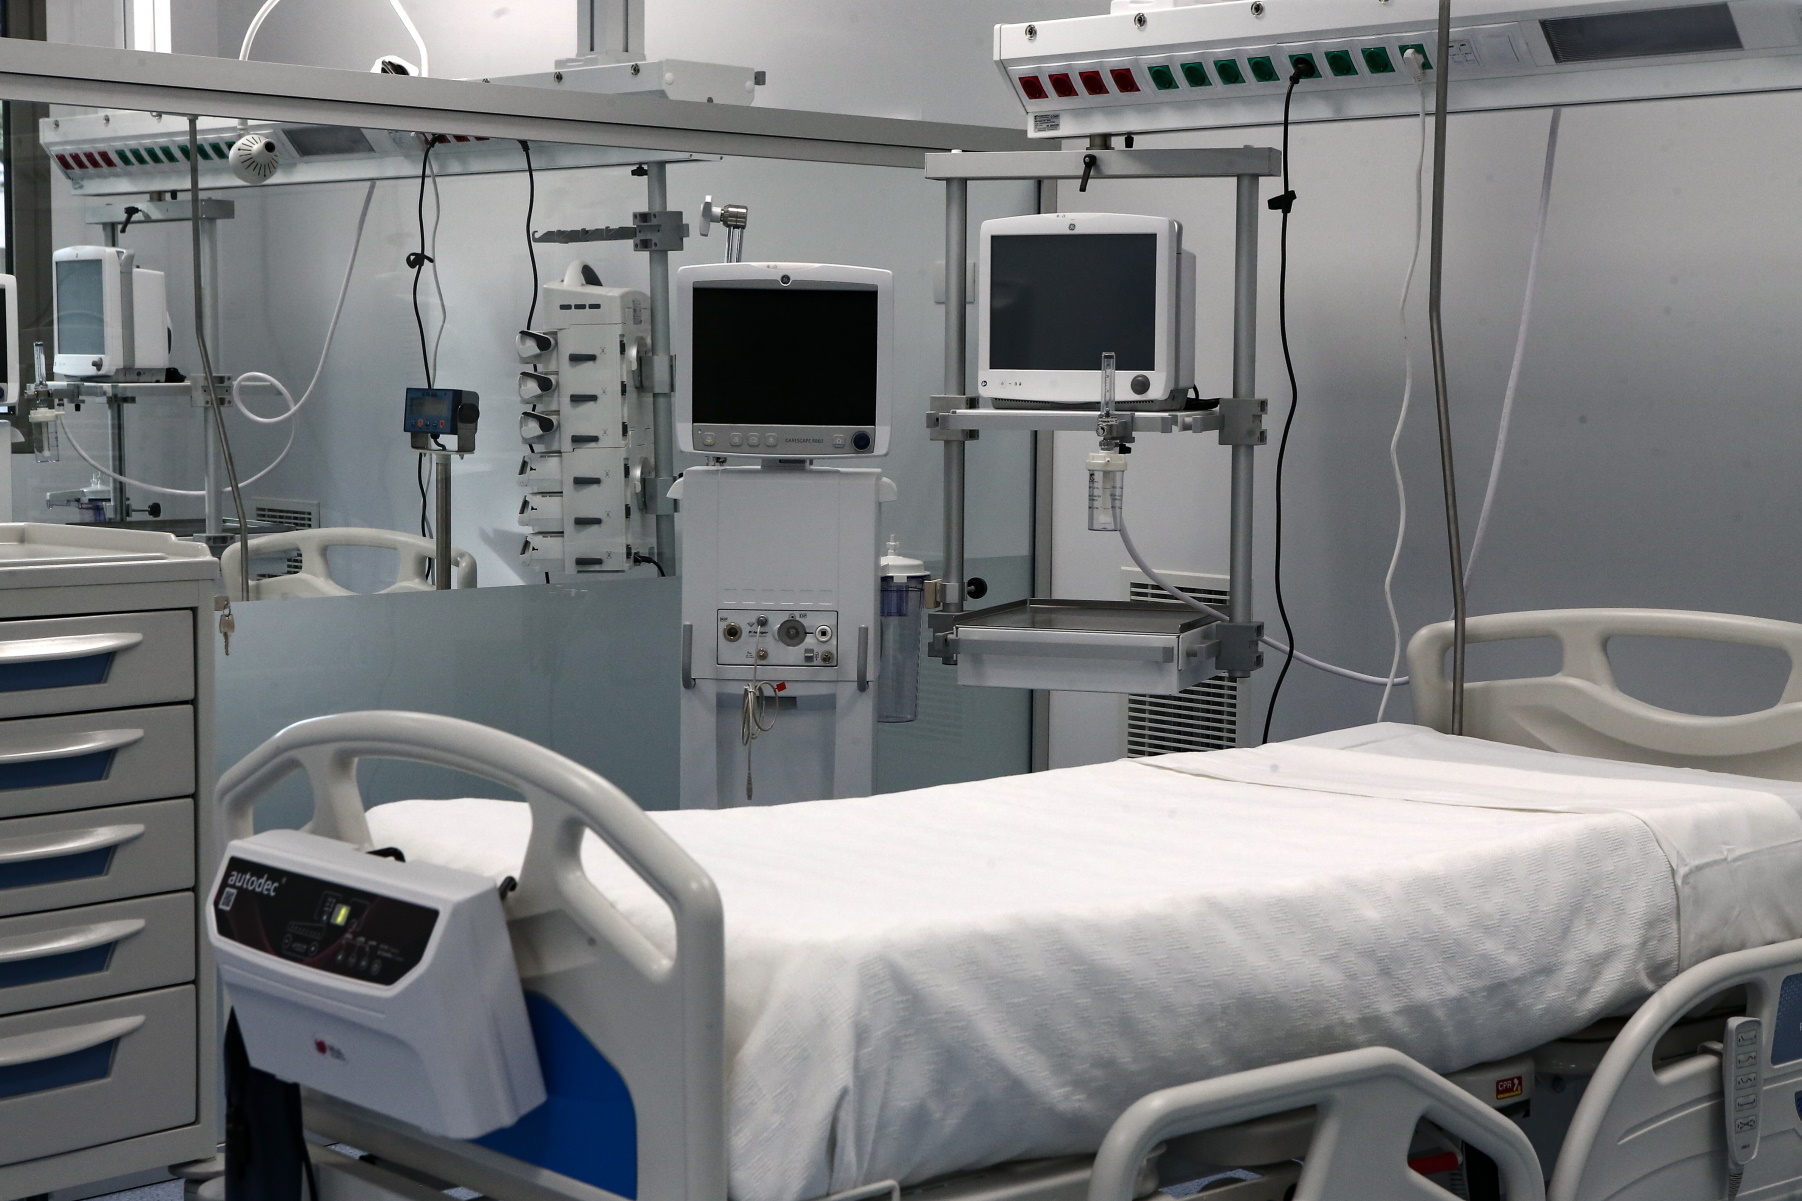 Κακοκαιρία «Μπάρμπαρα»: Κανονικά λειτουργούν τα νοσοκομεία – Νοσηλευτές διανυκτέρευσαν στη δουλειά για να είναι στη θέση τους